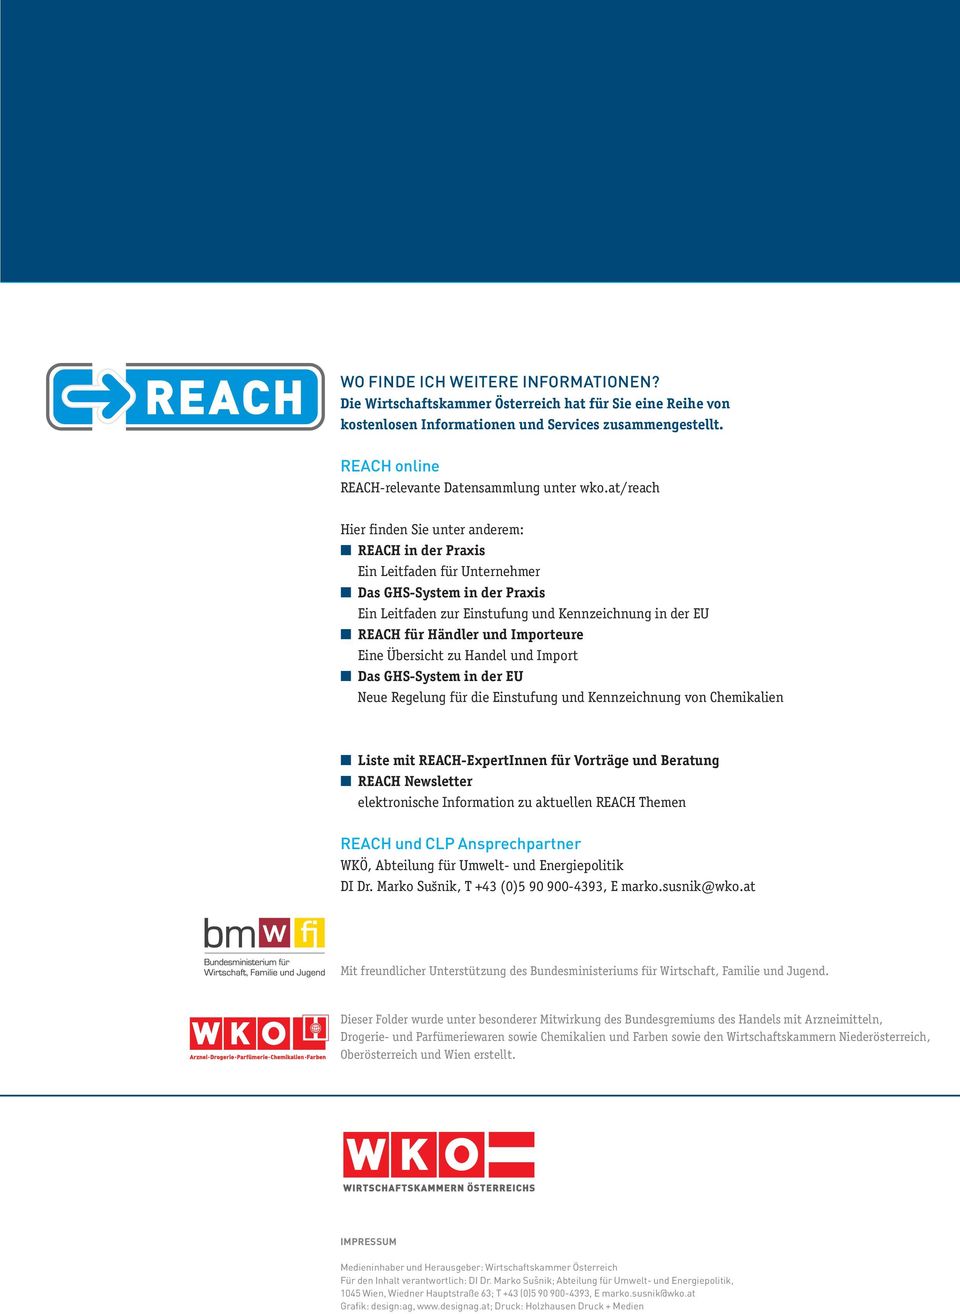 at/reach Hier finden Sie unter anderem: REACH in der Praxis Ein Leitfaden für Unternehmer Das GHS-System in der Praxis Ein Leitfaden zur Einstufung und Kennzeichnung in der EU REACH für Händler und